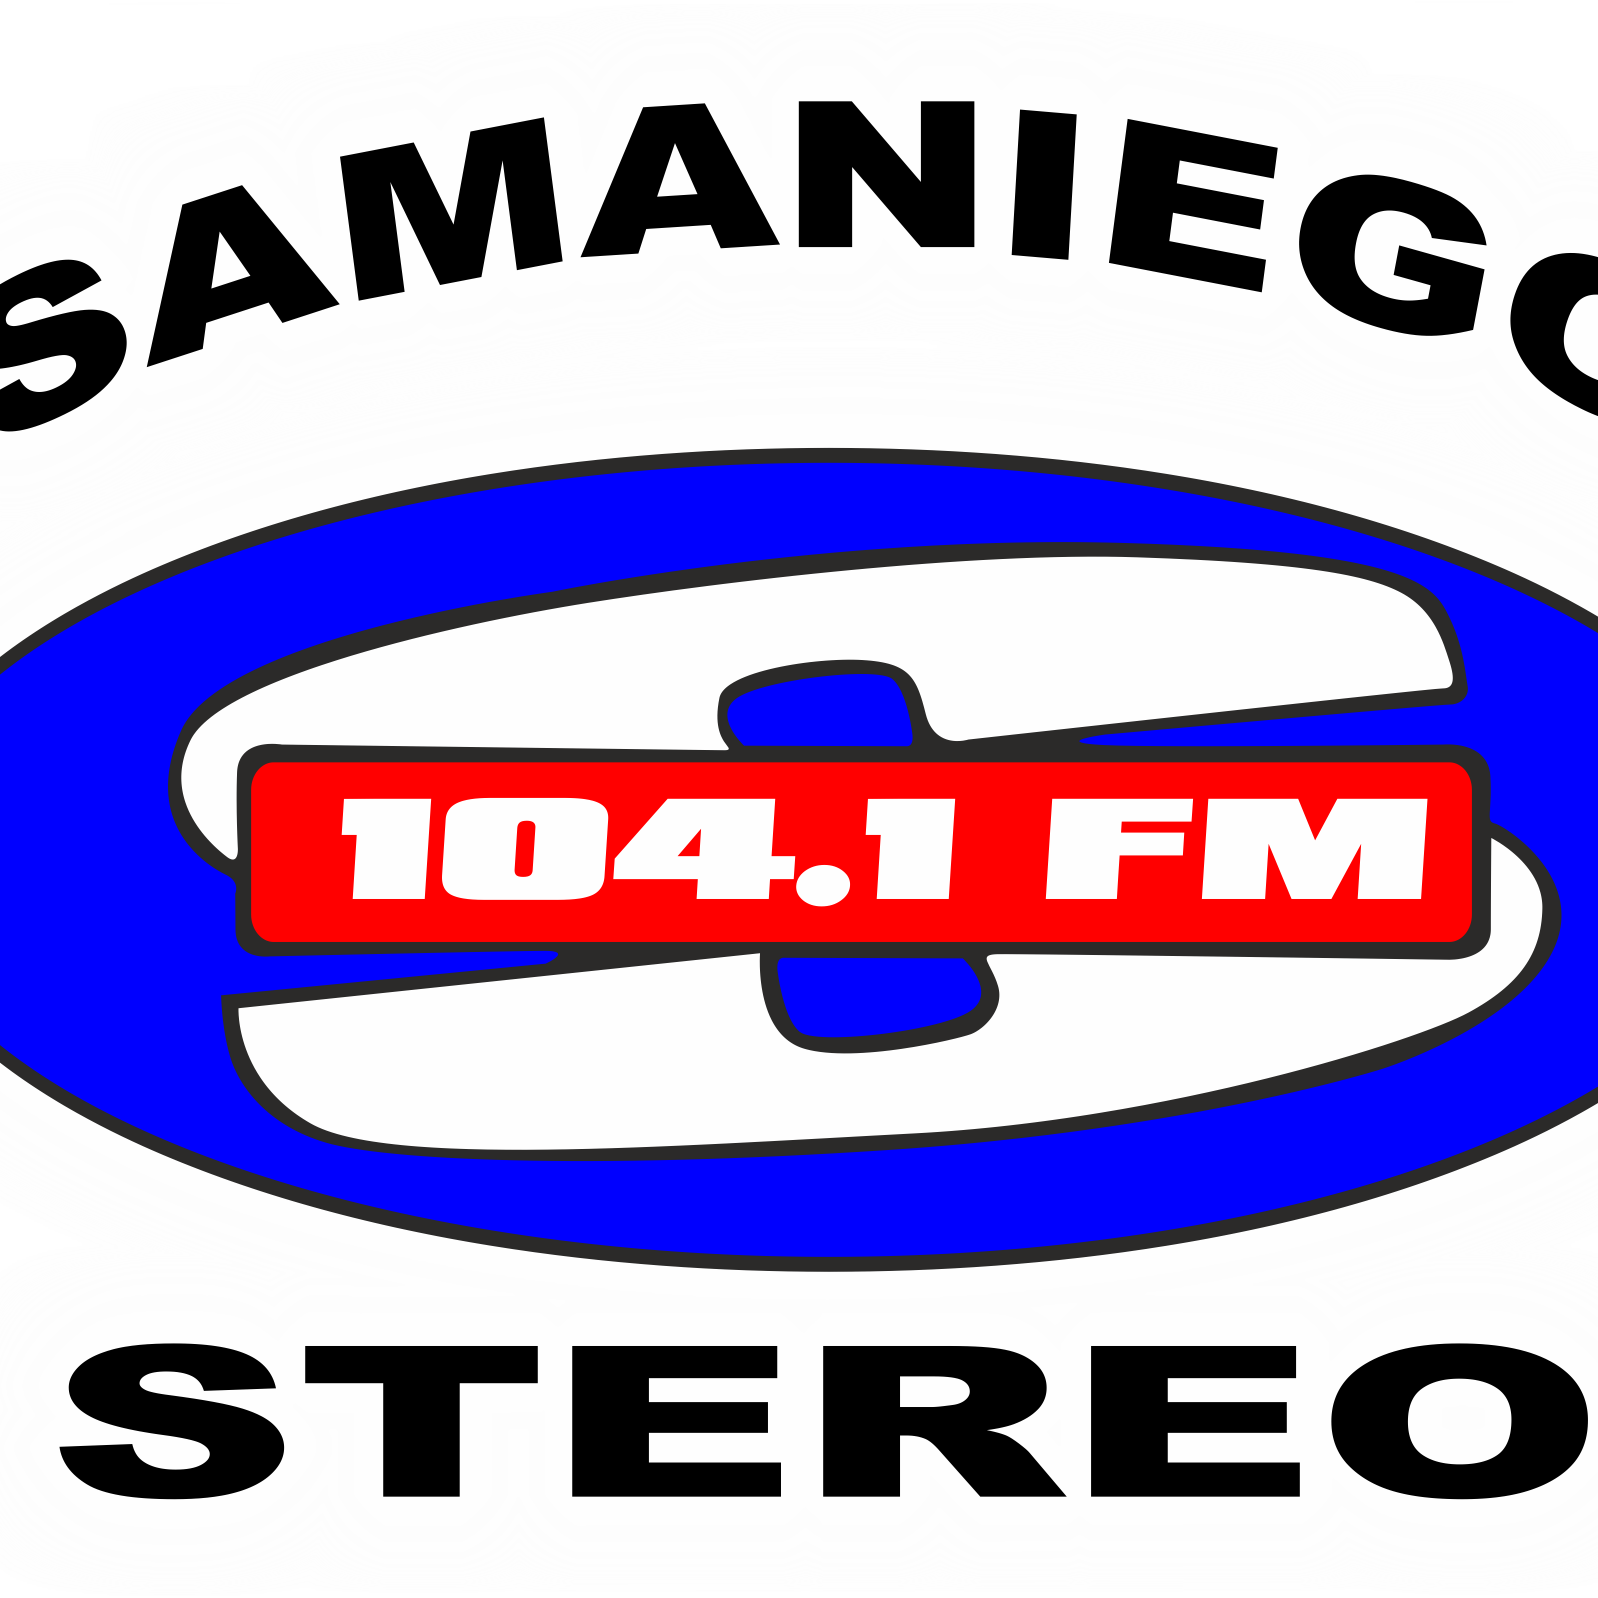 SAMANIEGO ESTEREO 104.1 FM